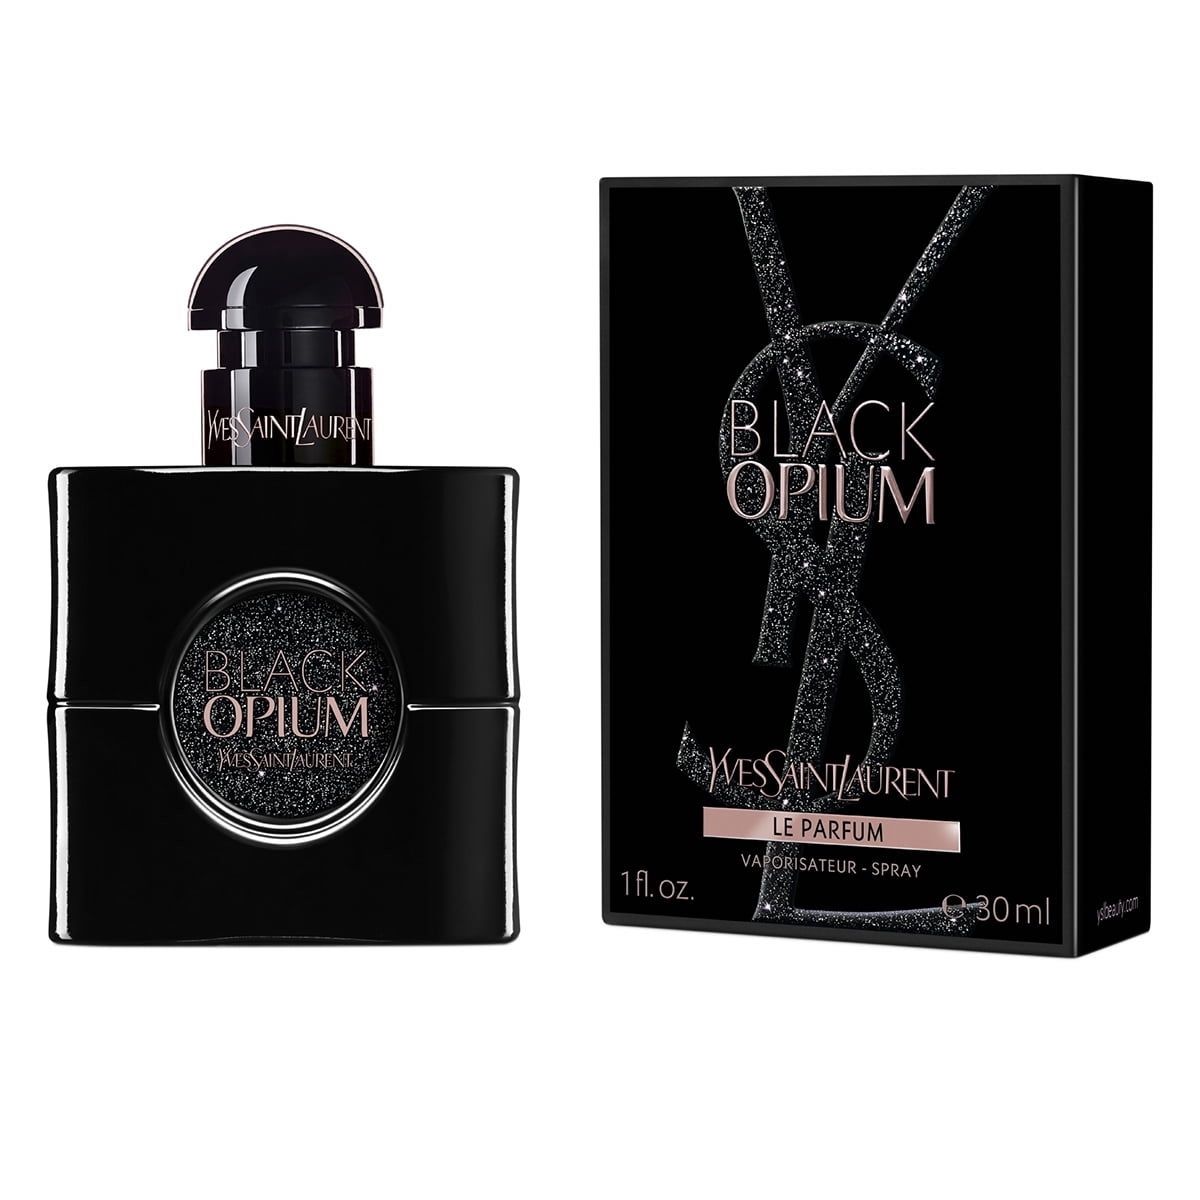  Yves Saint Laurent Black Opium Le Parfum 